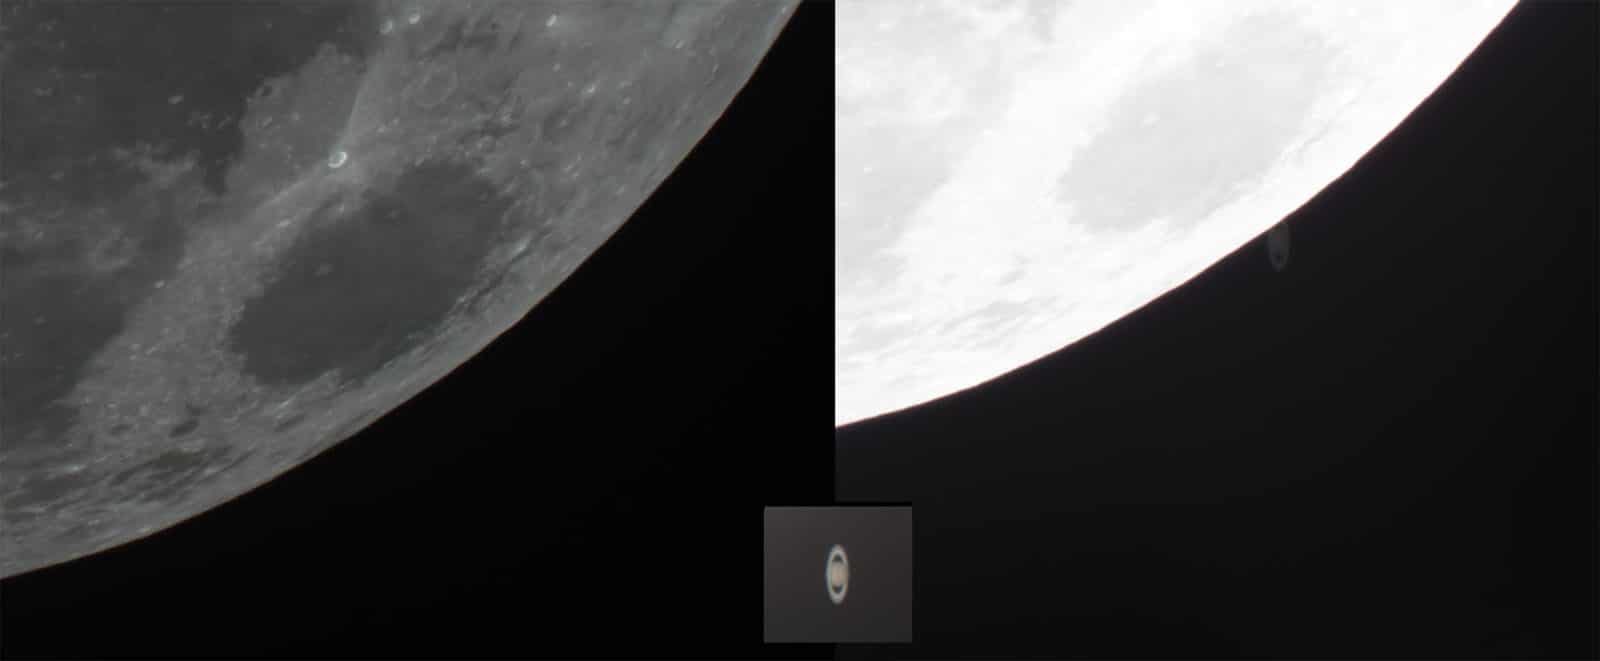 Bức ảnh chụp Sao Thổ lâp ló đằng sau Mặt Trăng thú vị